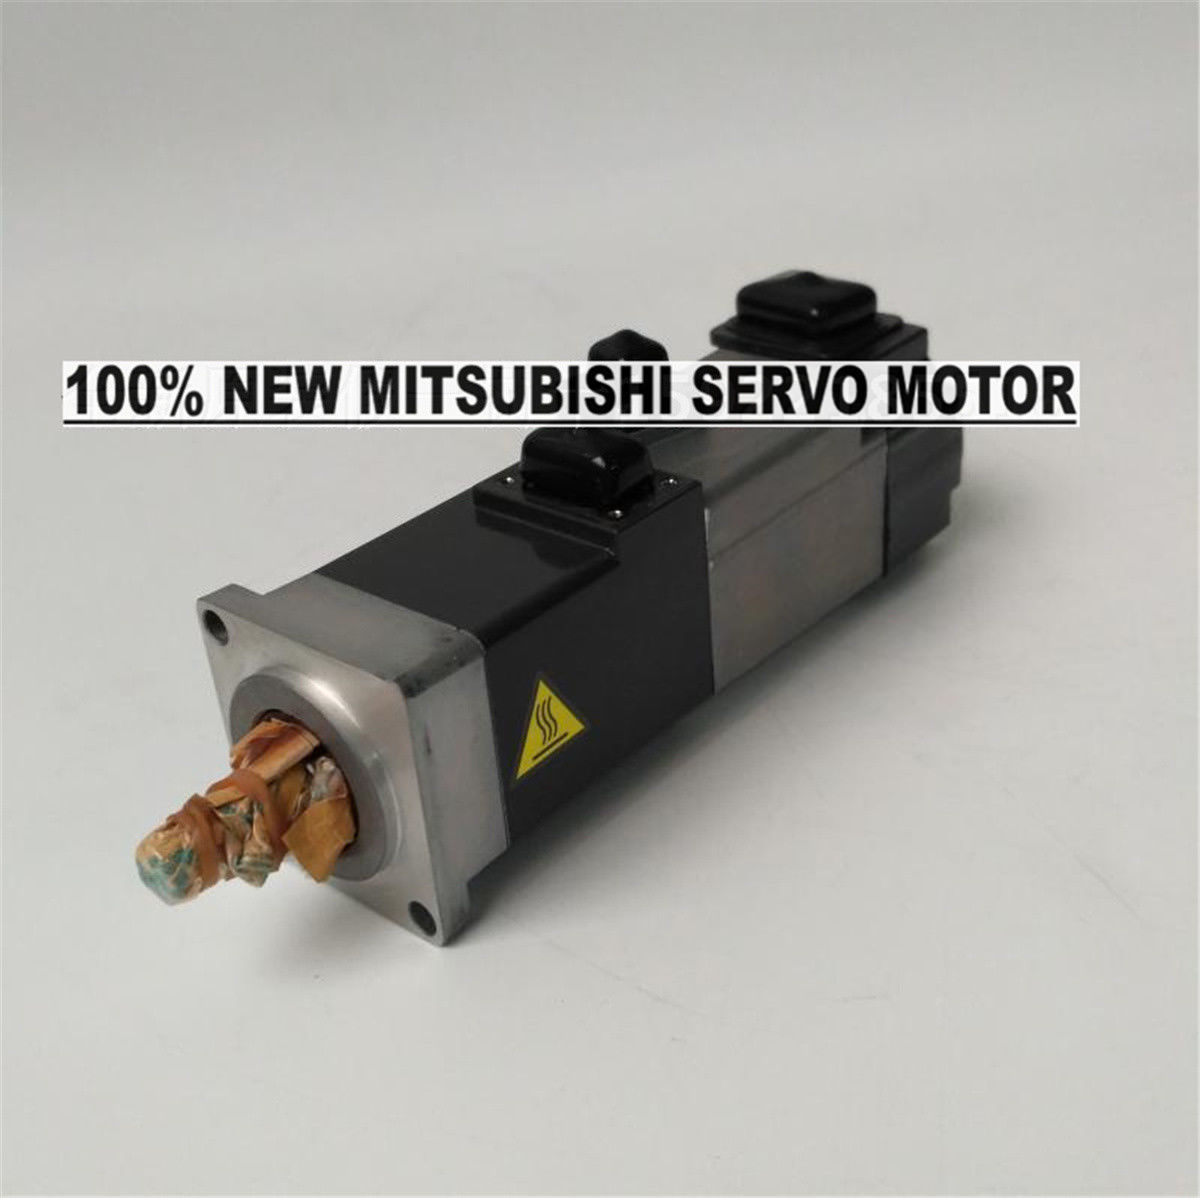 NEW Mitsubishi Servo Motor HF-KN13BJ-S100 in box HFKN13BJS100 - Click Image to Close